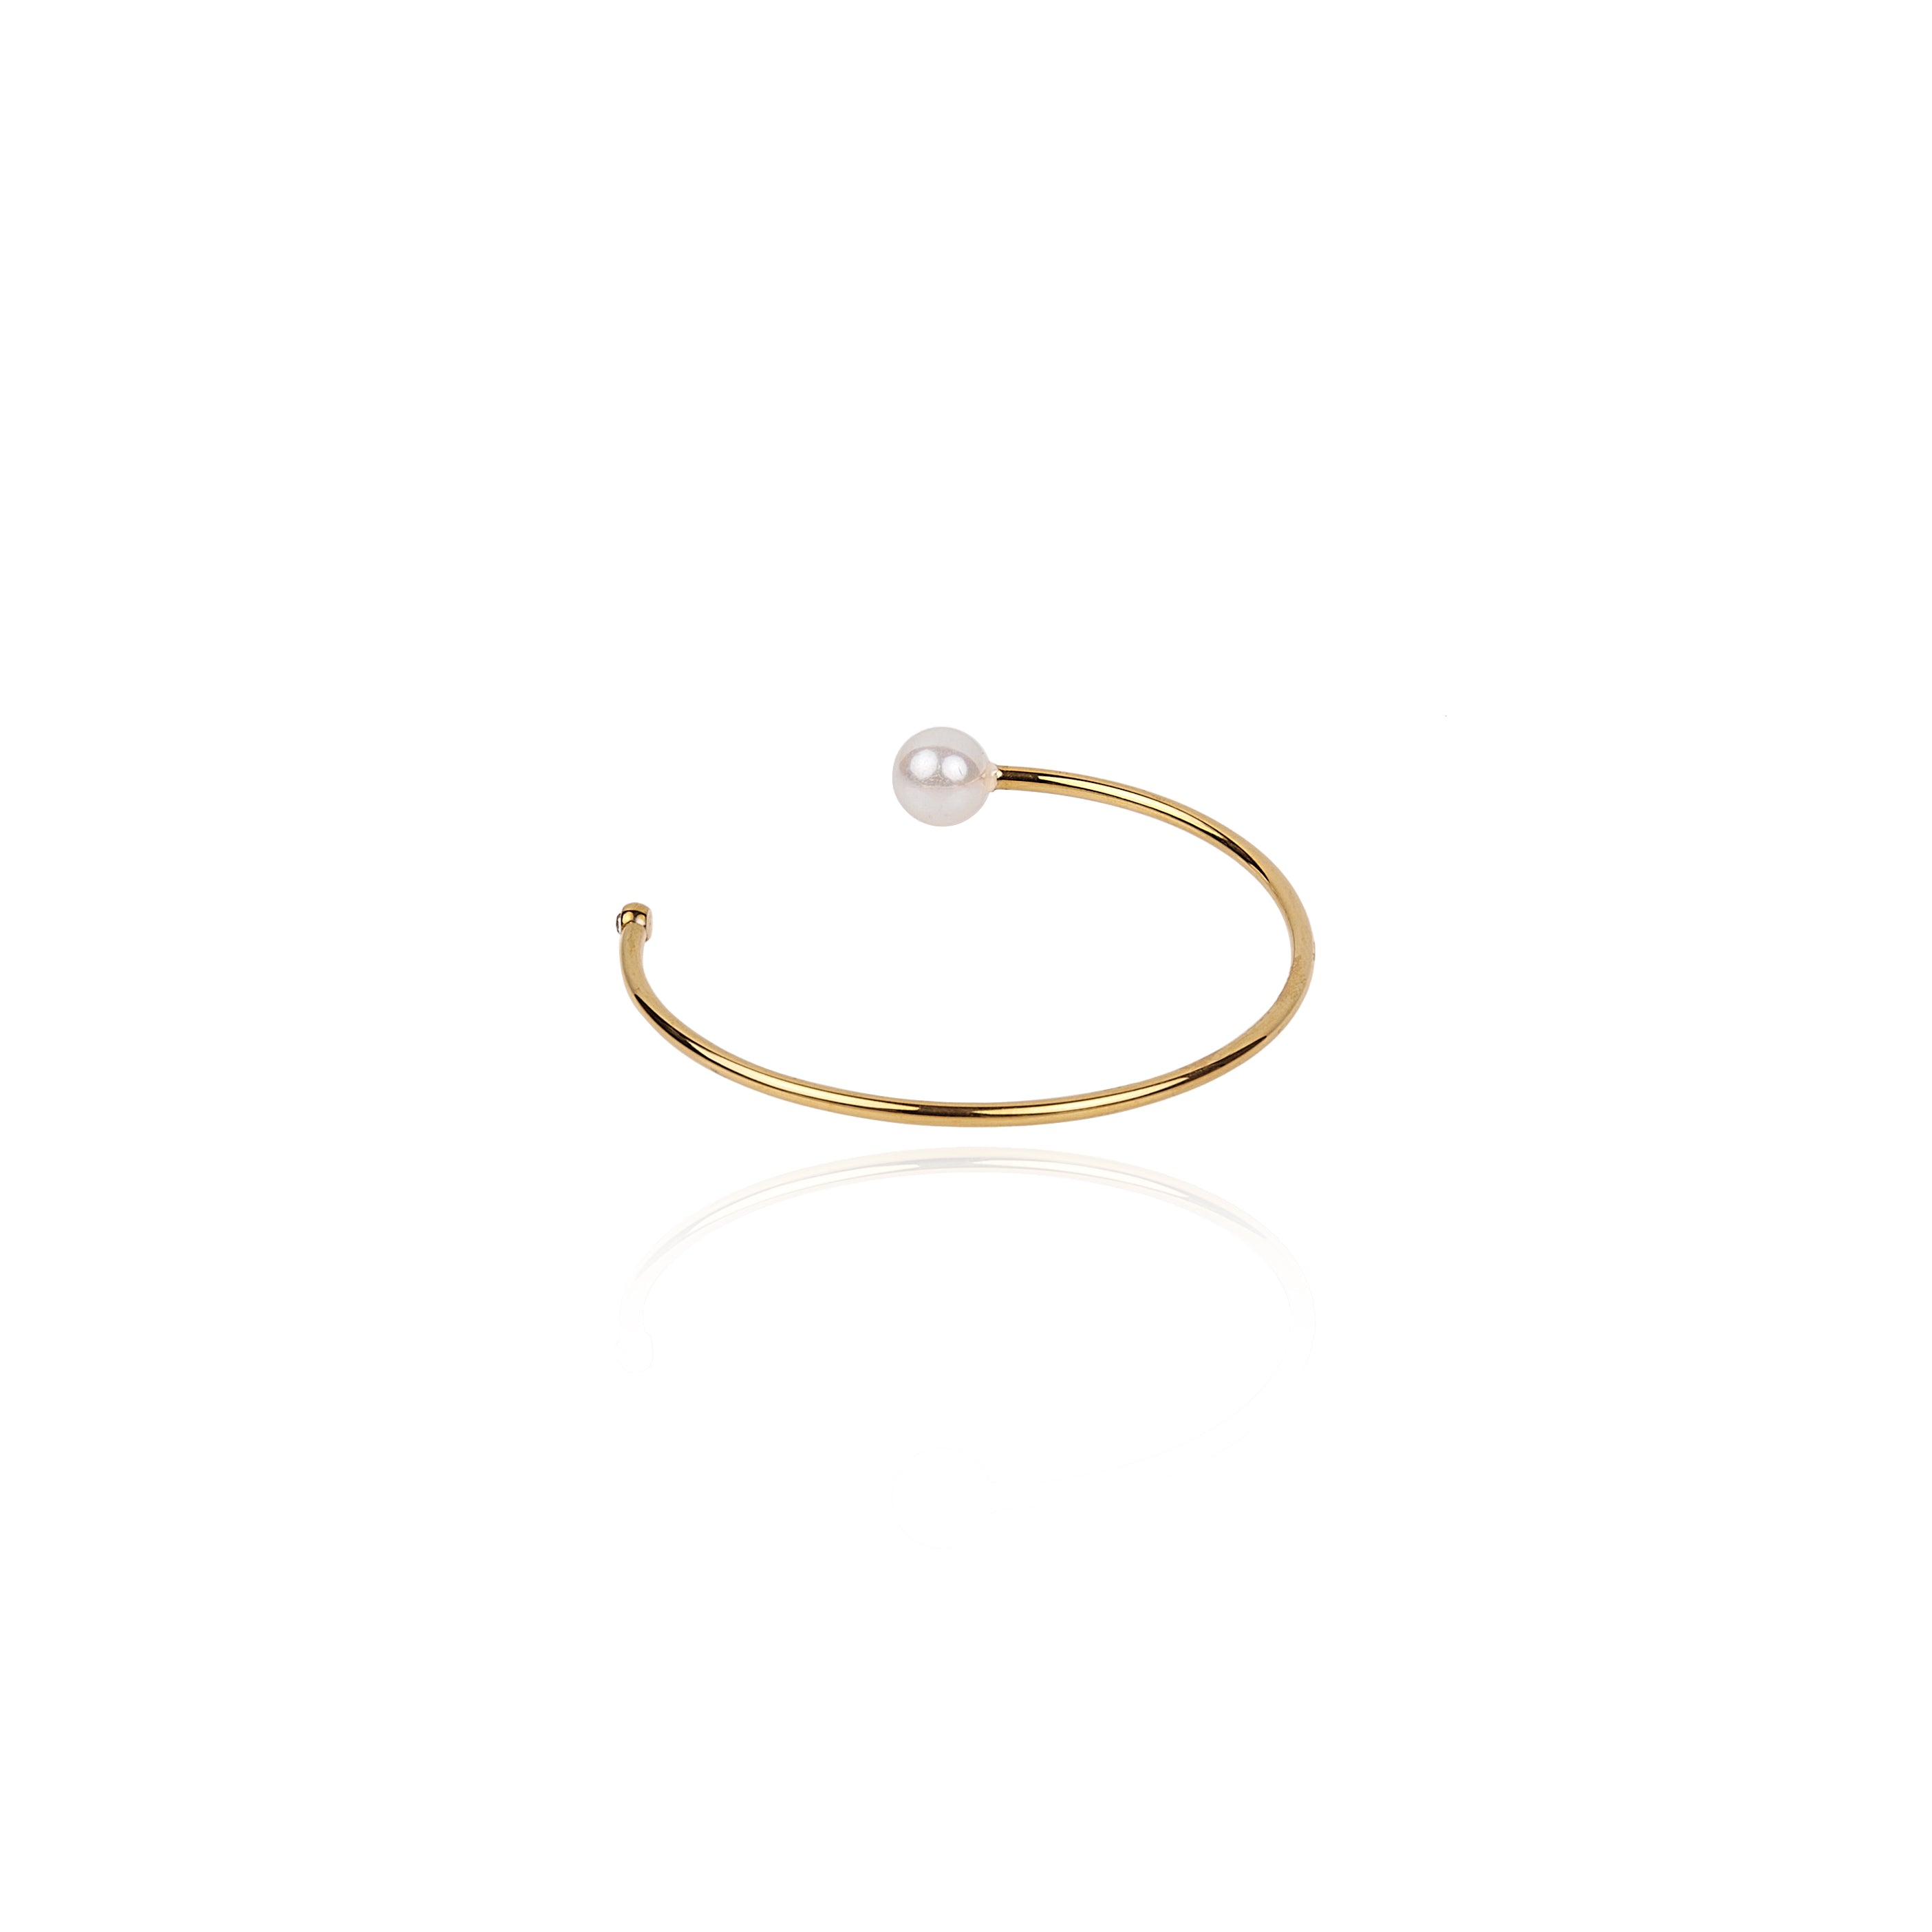 Tseatjewelry Women's Gold Knot Cuff Bracelet